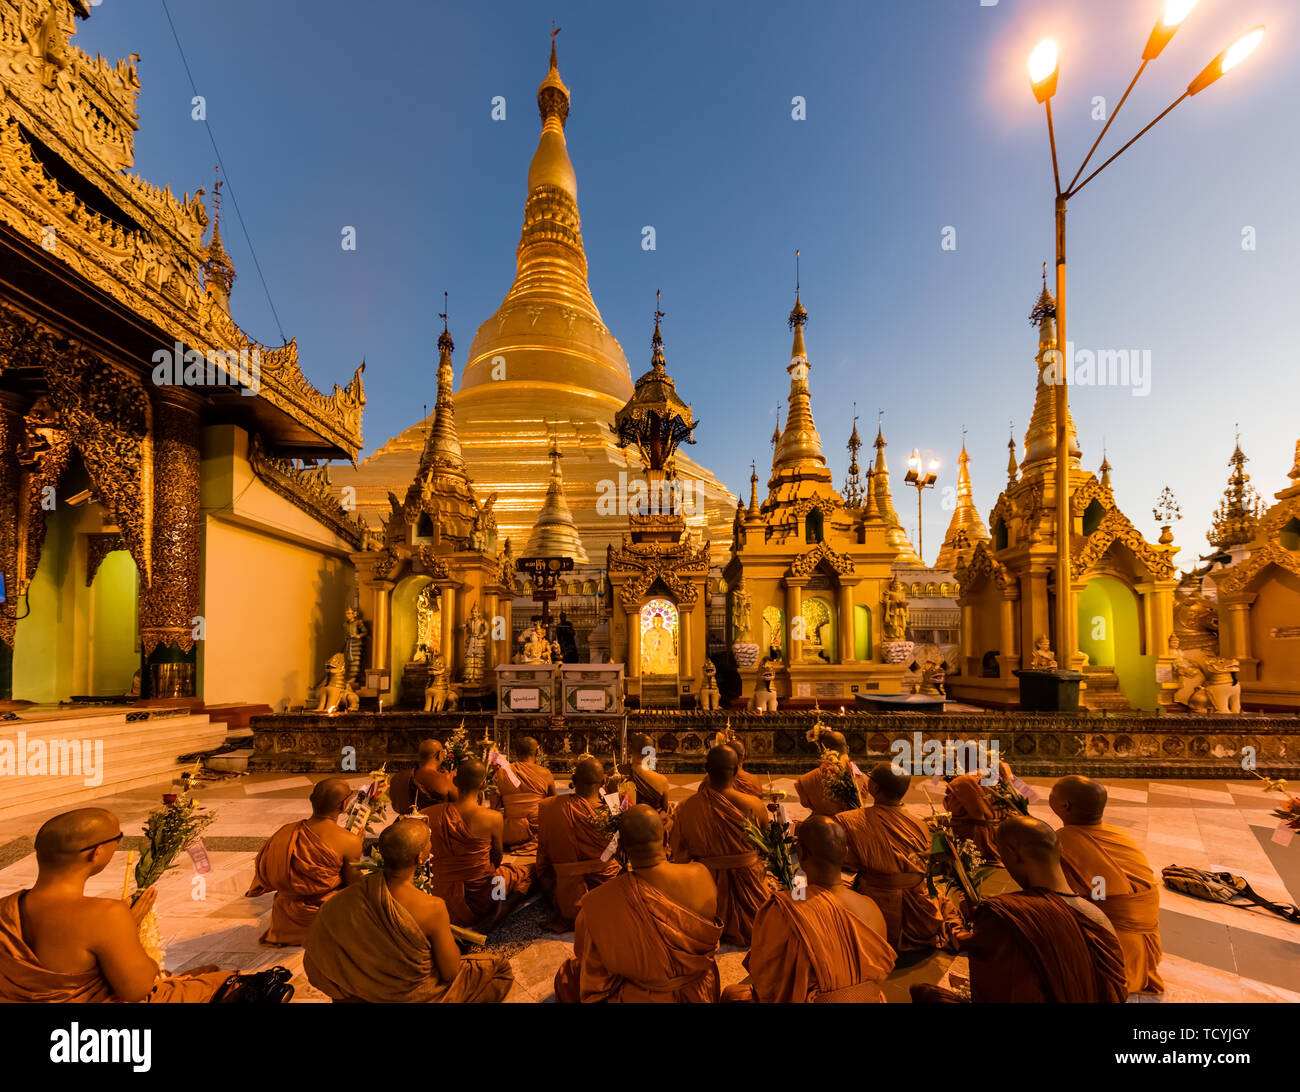 YANGON, MYANMAR - 16 décembre 2016 : prier les moines de la pagode Shwedagon à Yangon (Rangoon) au Myanmar (Birmanie) Banque D'Images